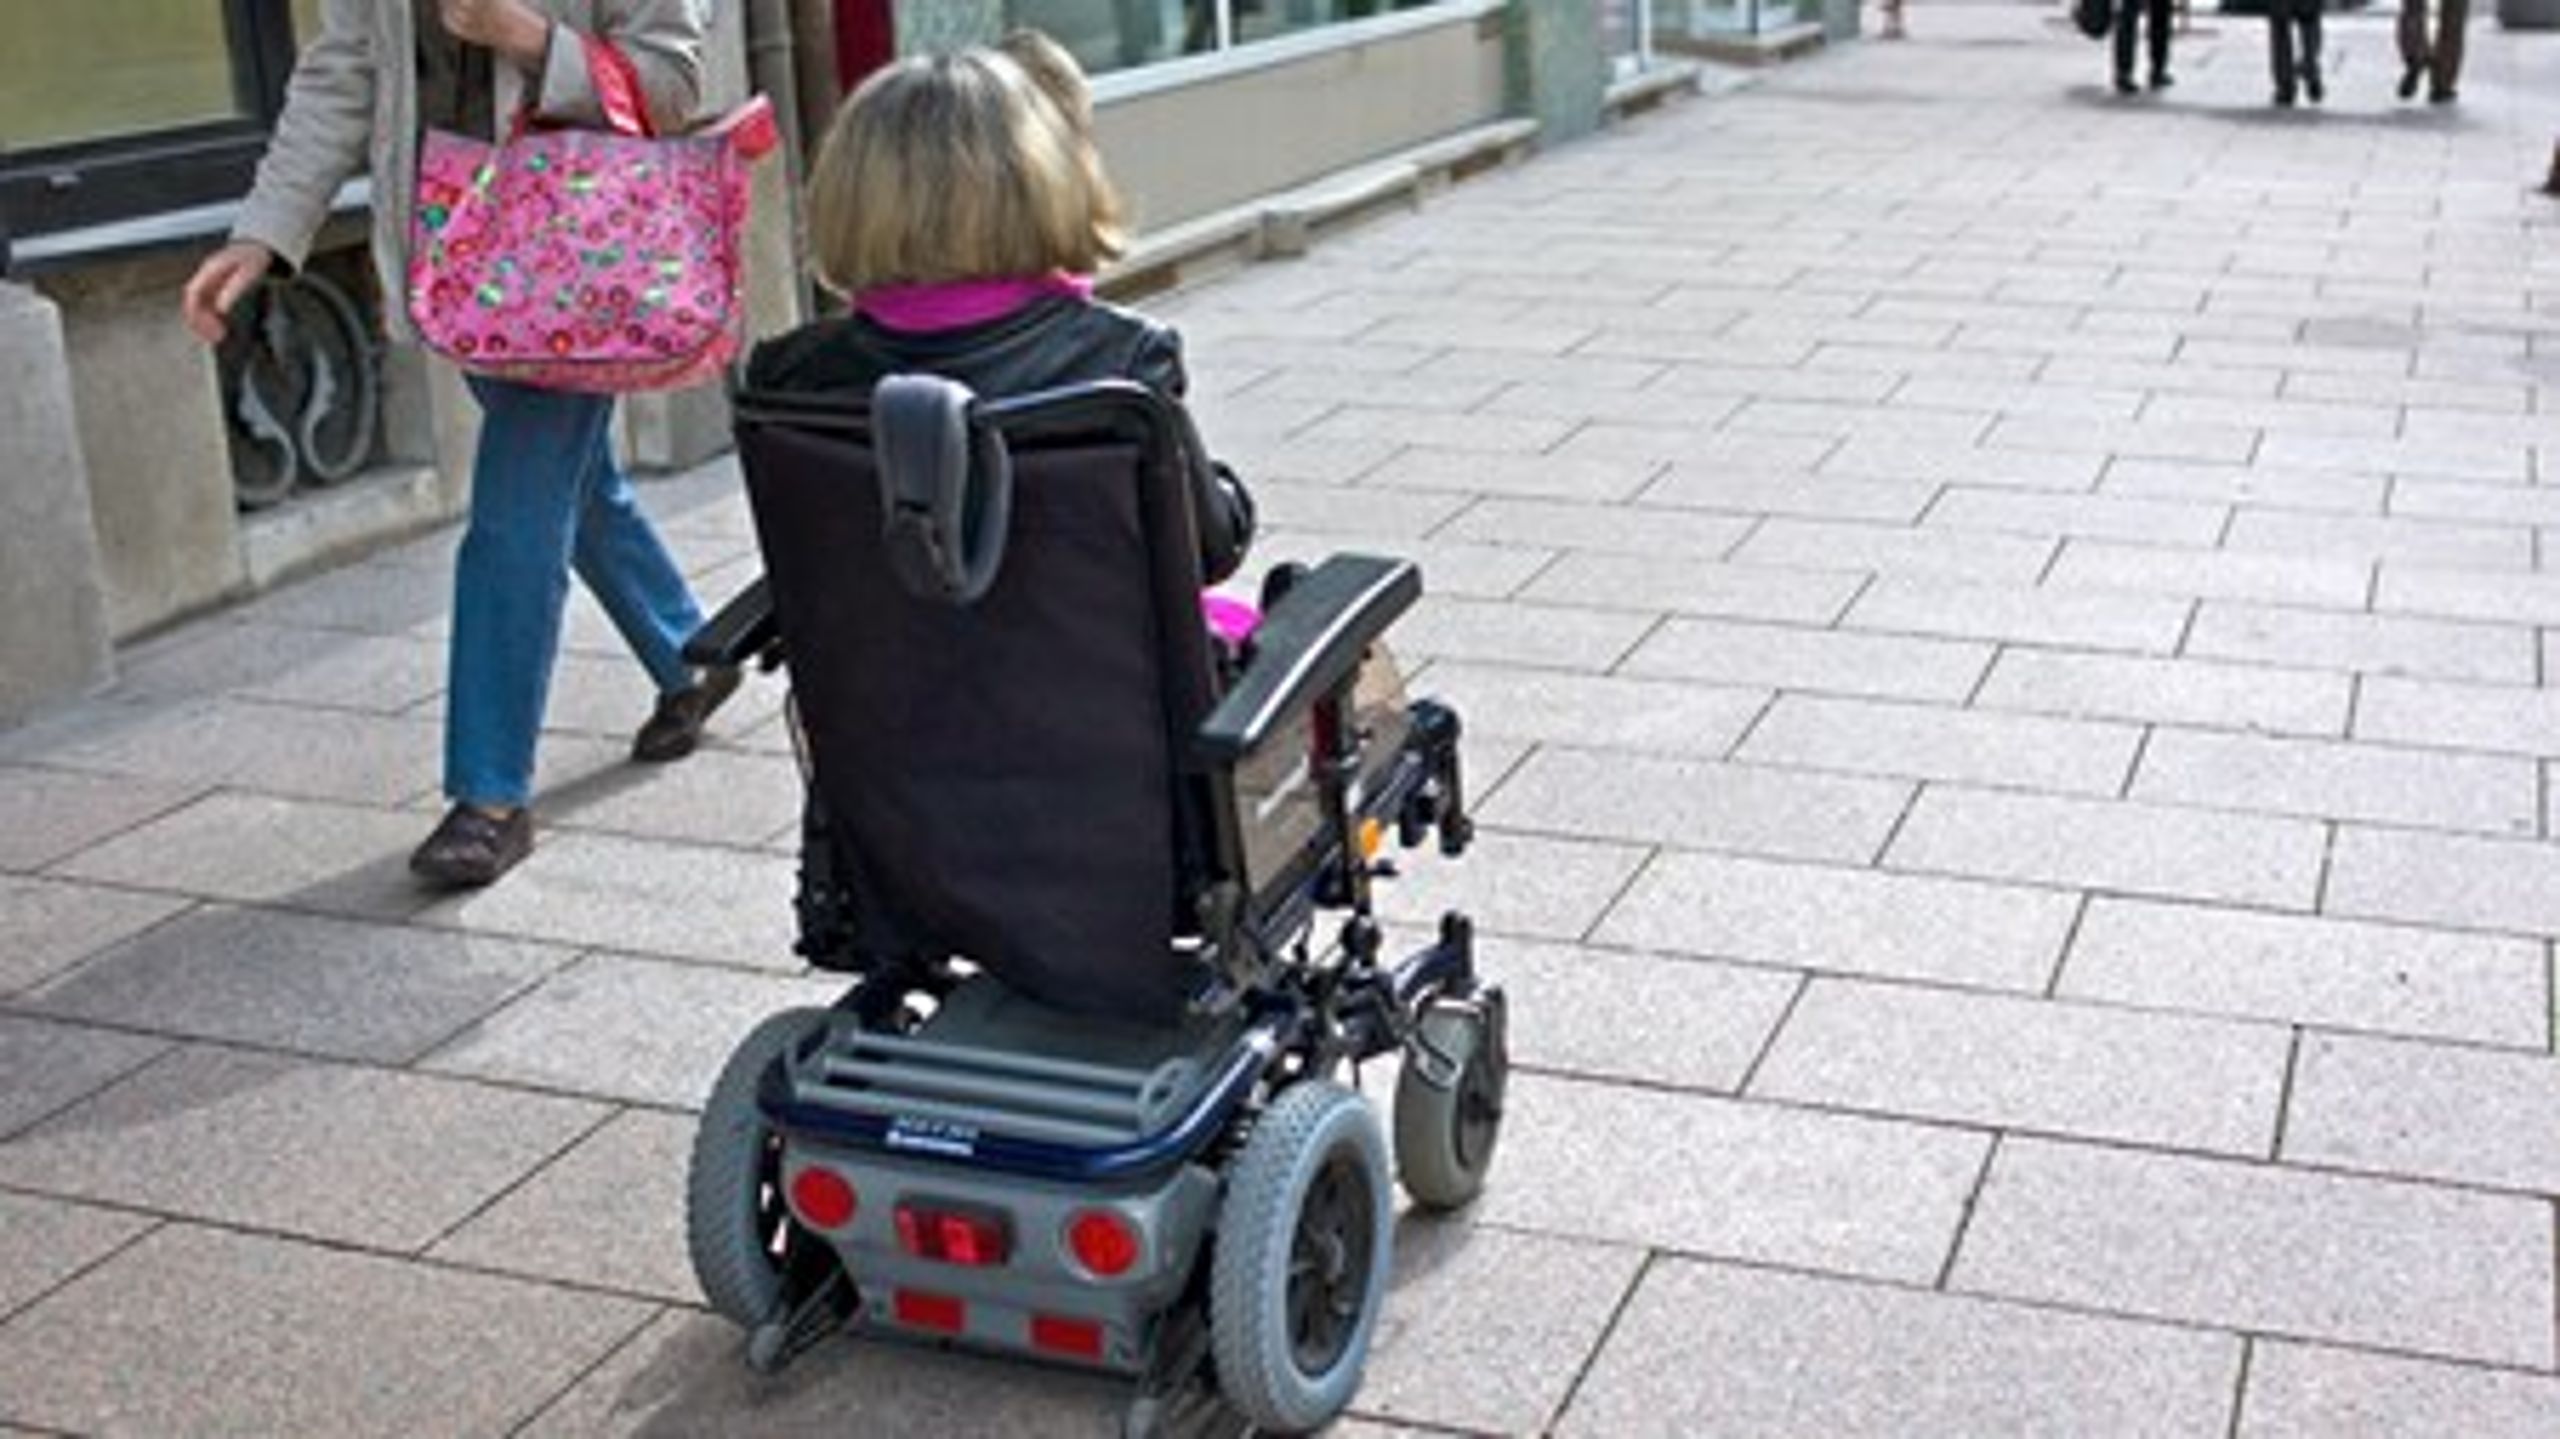 Tilbud til voksne handicappede fylder godt i den kommunale økonomi. Regeringen vil nu til at ændre servicelovens bestemmelser på området.